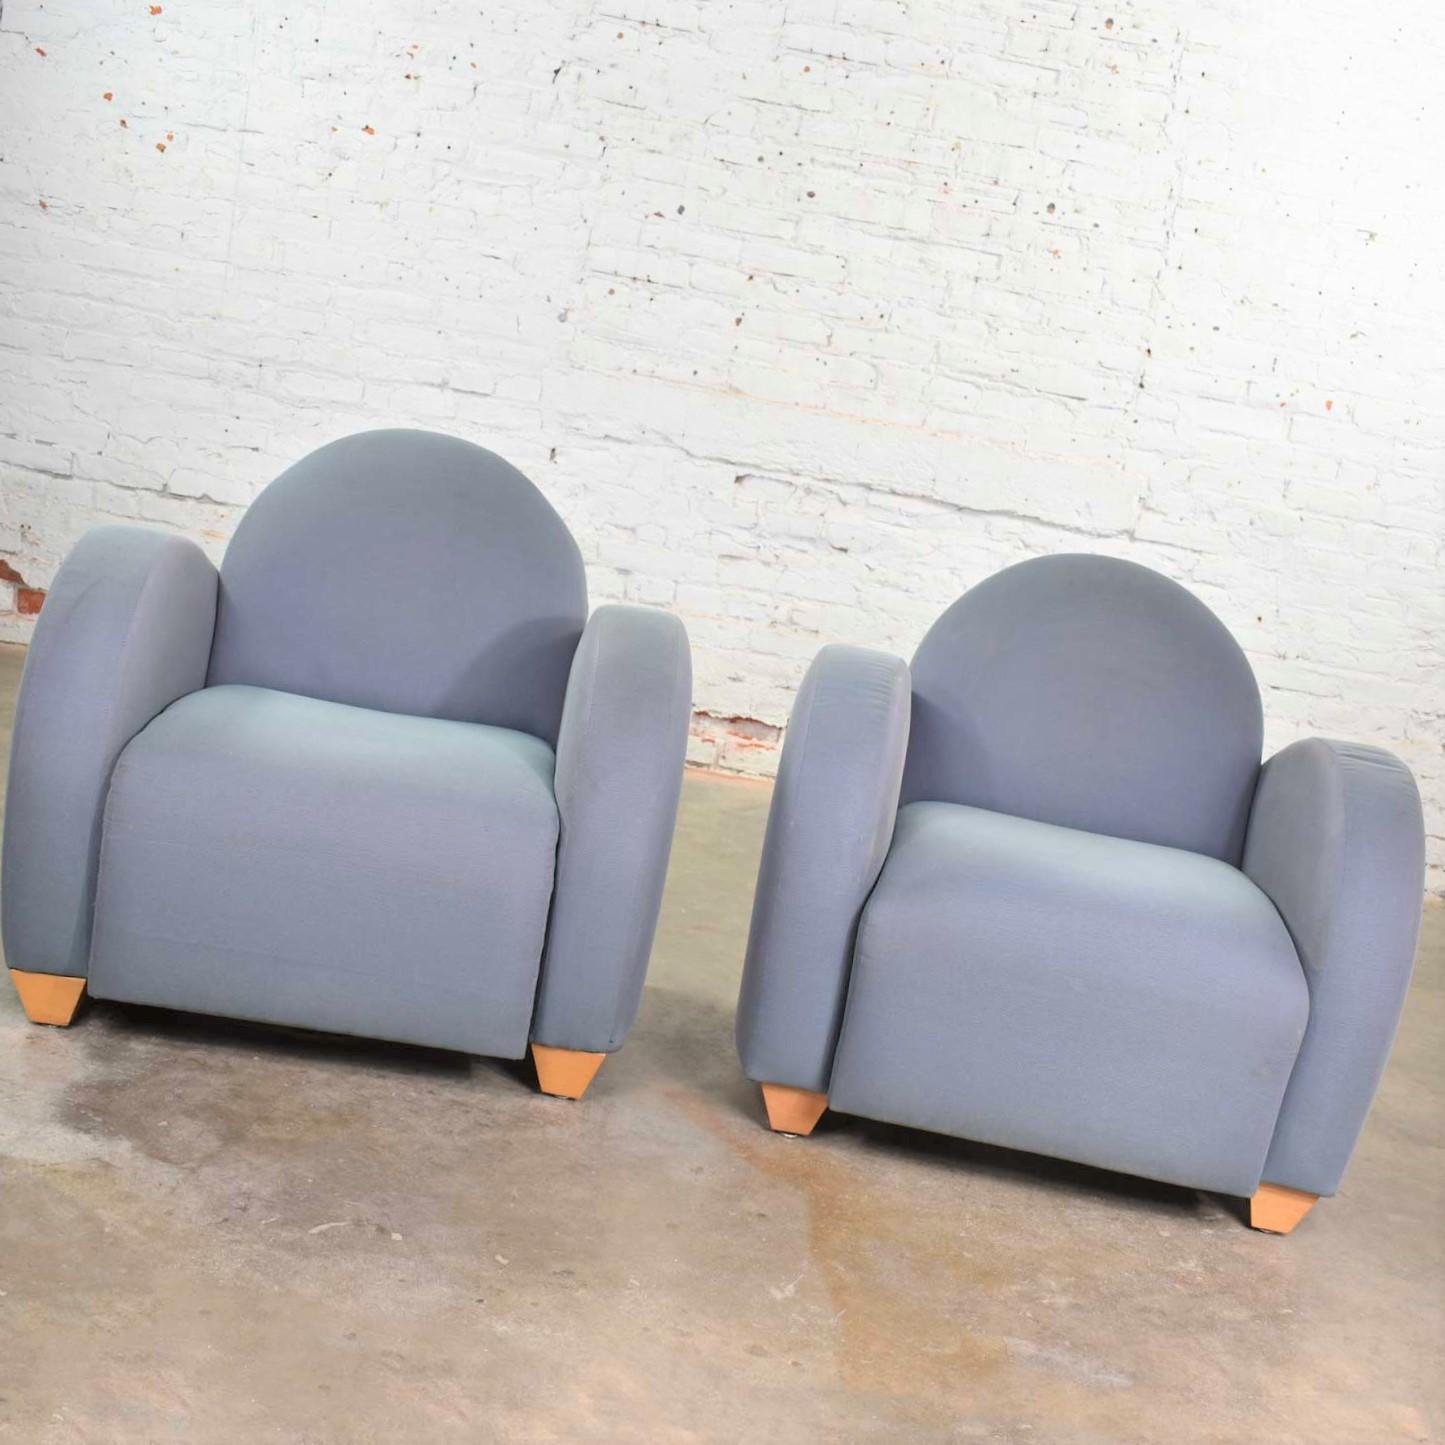 Wir bieten hier eine große Anzahl von Michael Graves entworfenen postmodernen Clubsesseln oder Loungesesseln an, die von David Edward Company hergestellt werden. Wir haben diese Stühle einzeln eingepreist, aber Sie können auch mehrere davon kaufen.